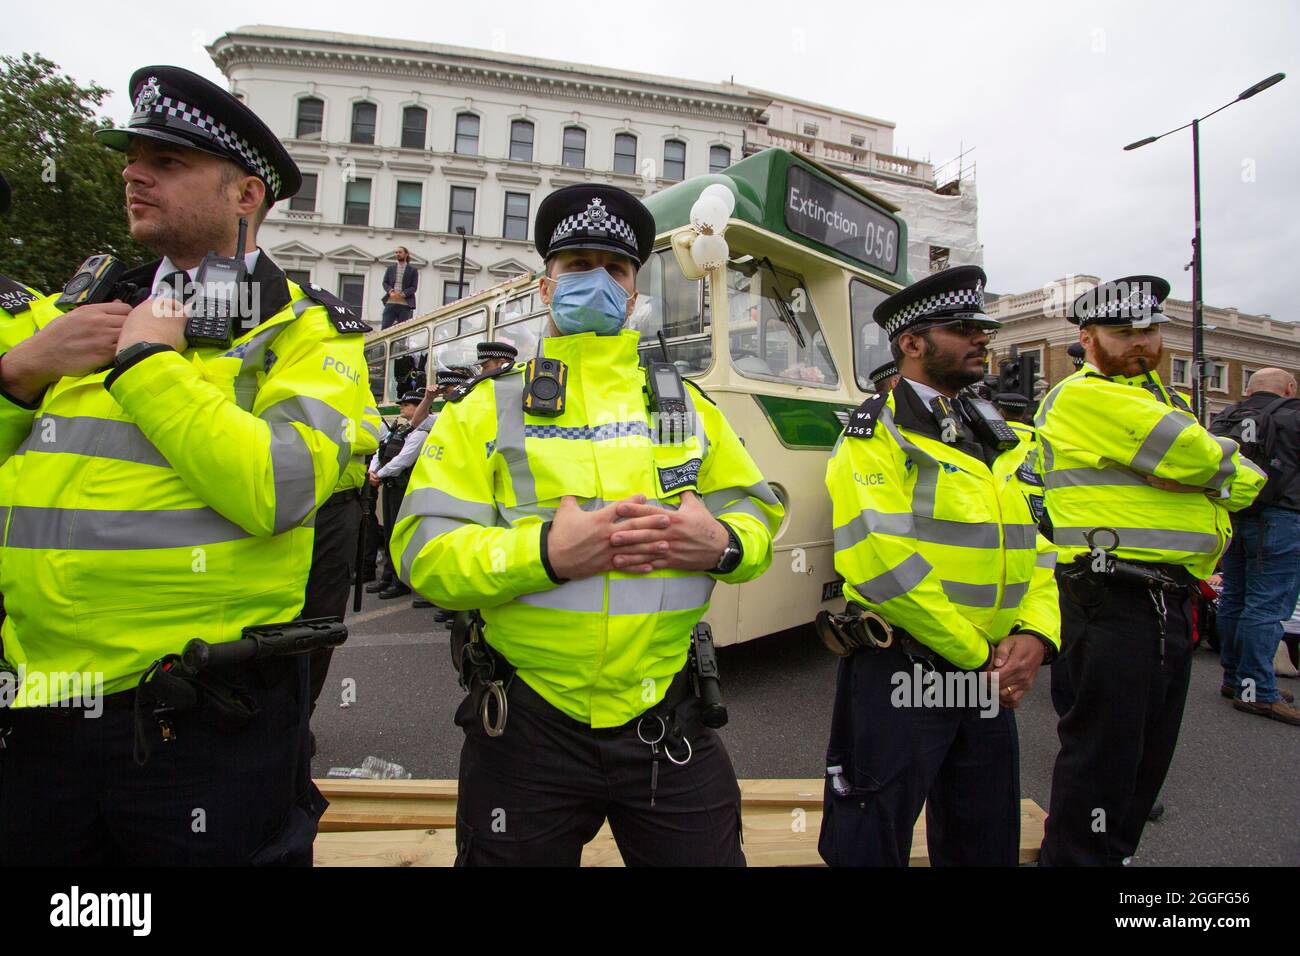 Extinction Rebellion-Aktivisten London 31. August 2021. Demonstranten blockieren die London Bridge mit einem Bus als Teil der laufenden XR-Proteste in London, während Polizeibeamte den Bus bewachen Stockfoto